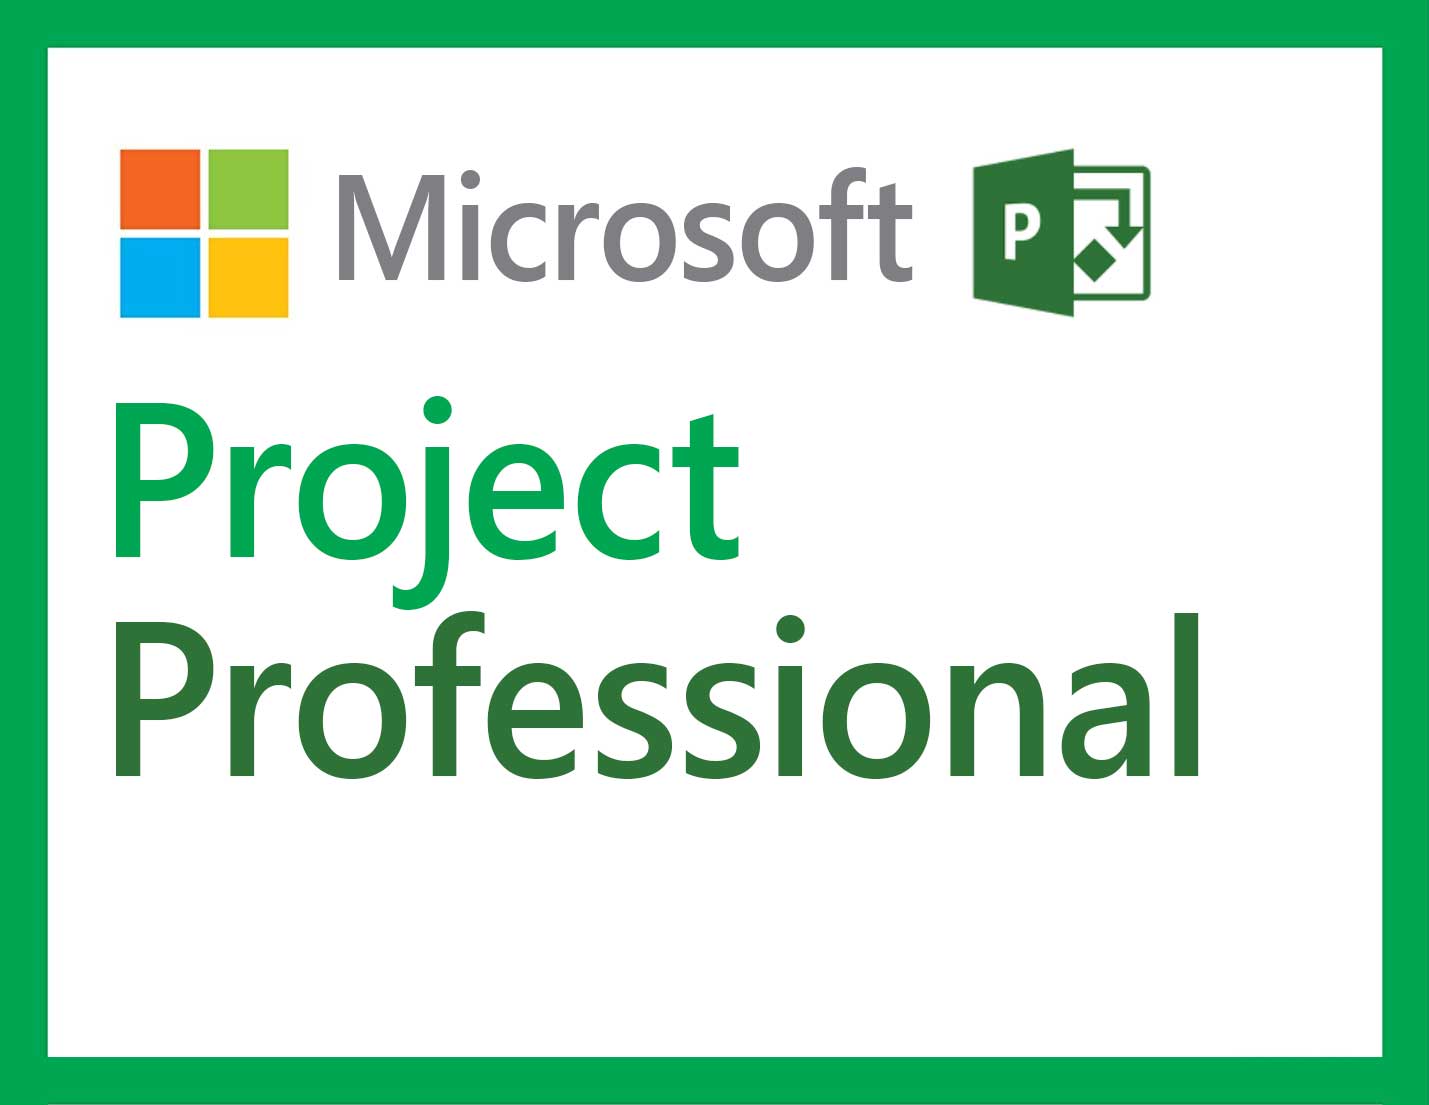 Nur MS Project Professionalt hat die vollständige Funktionalität